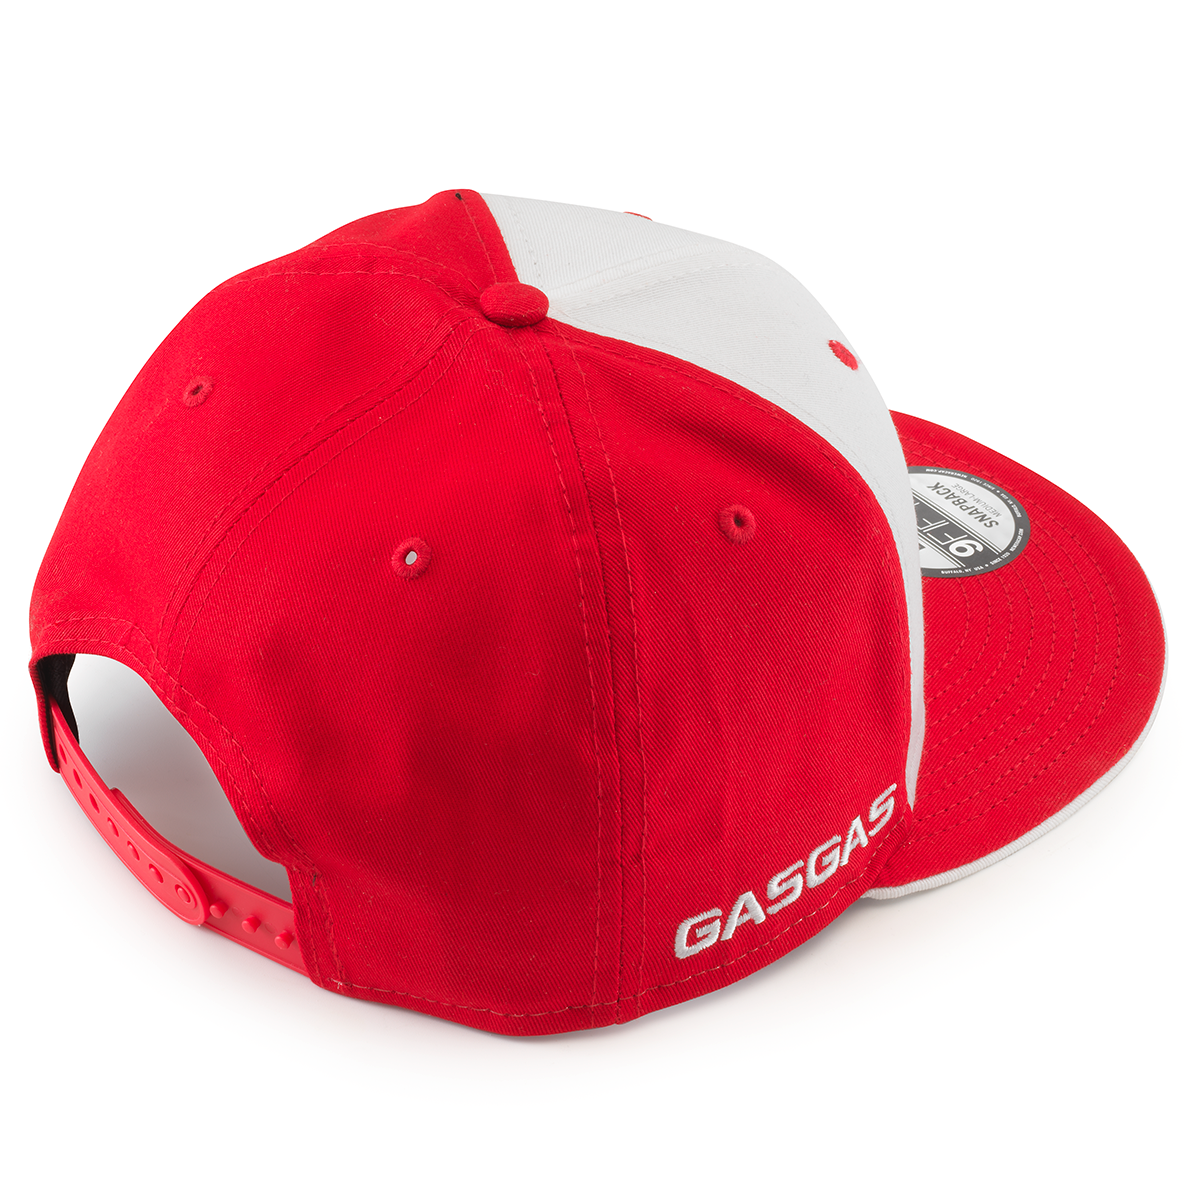 GASGAS Replica Team Flat Cap